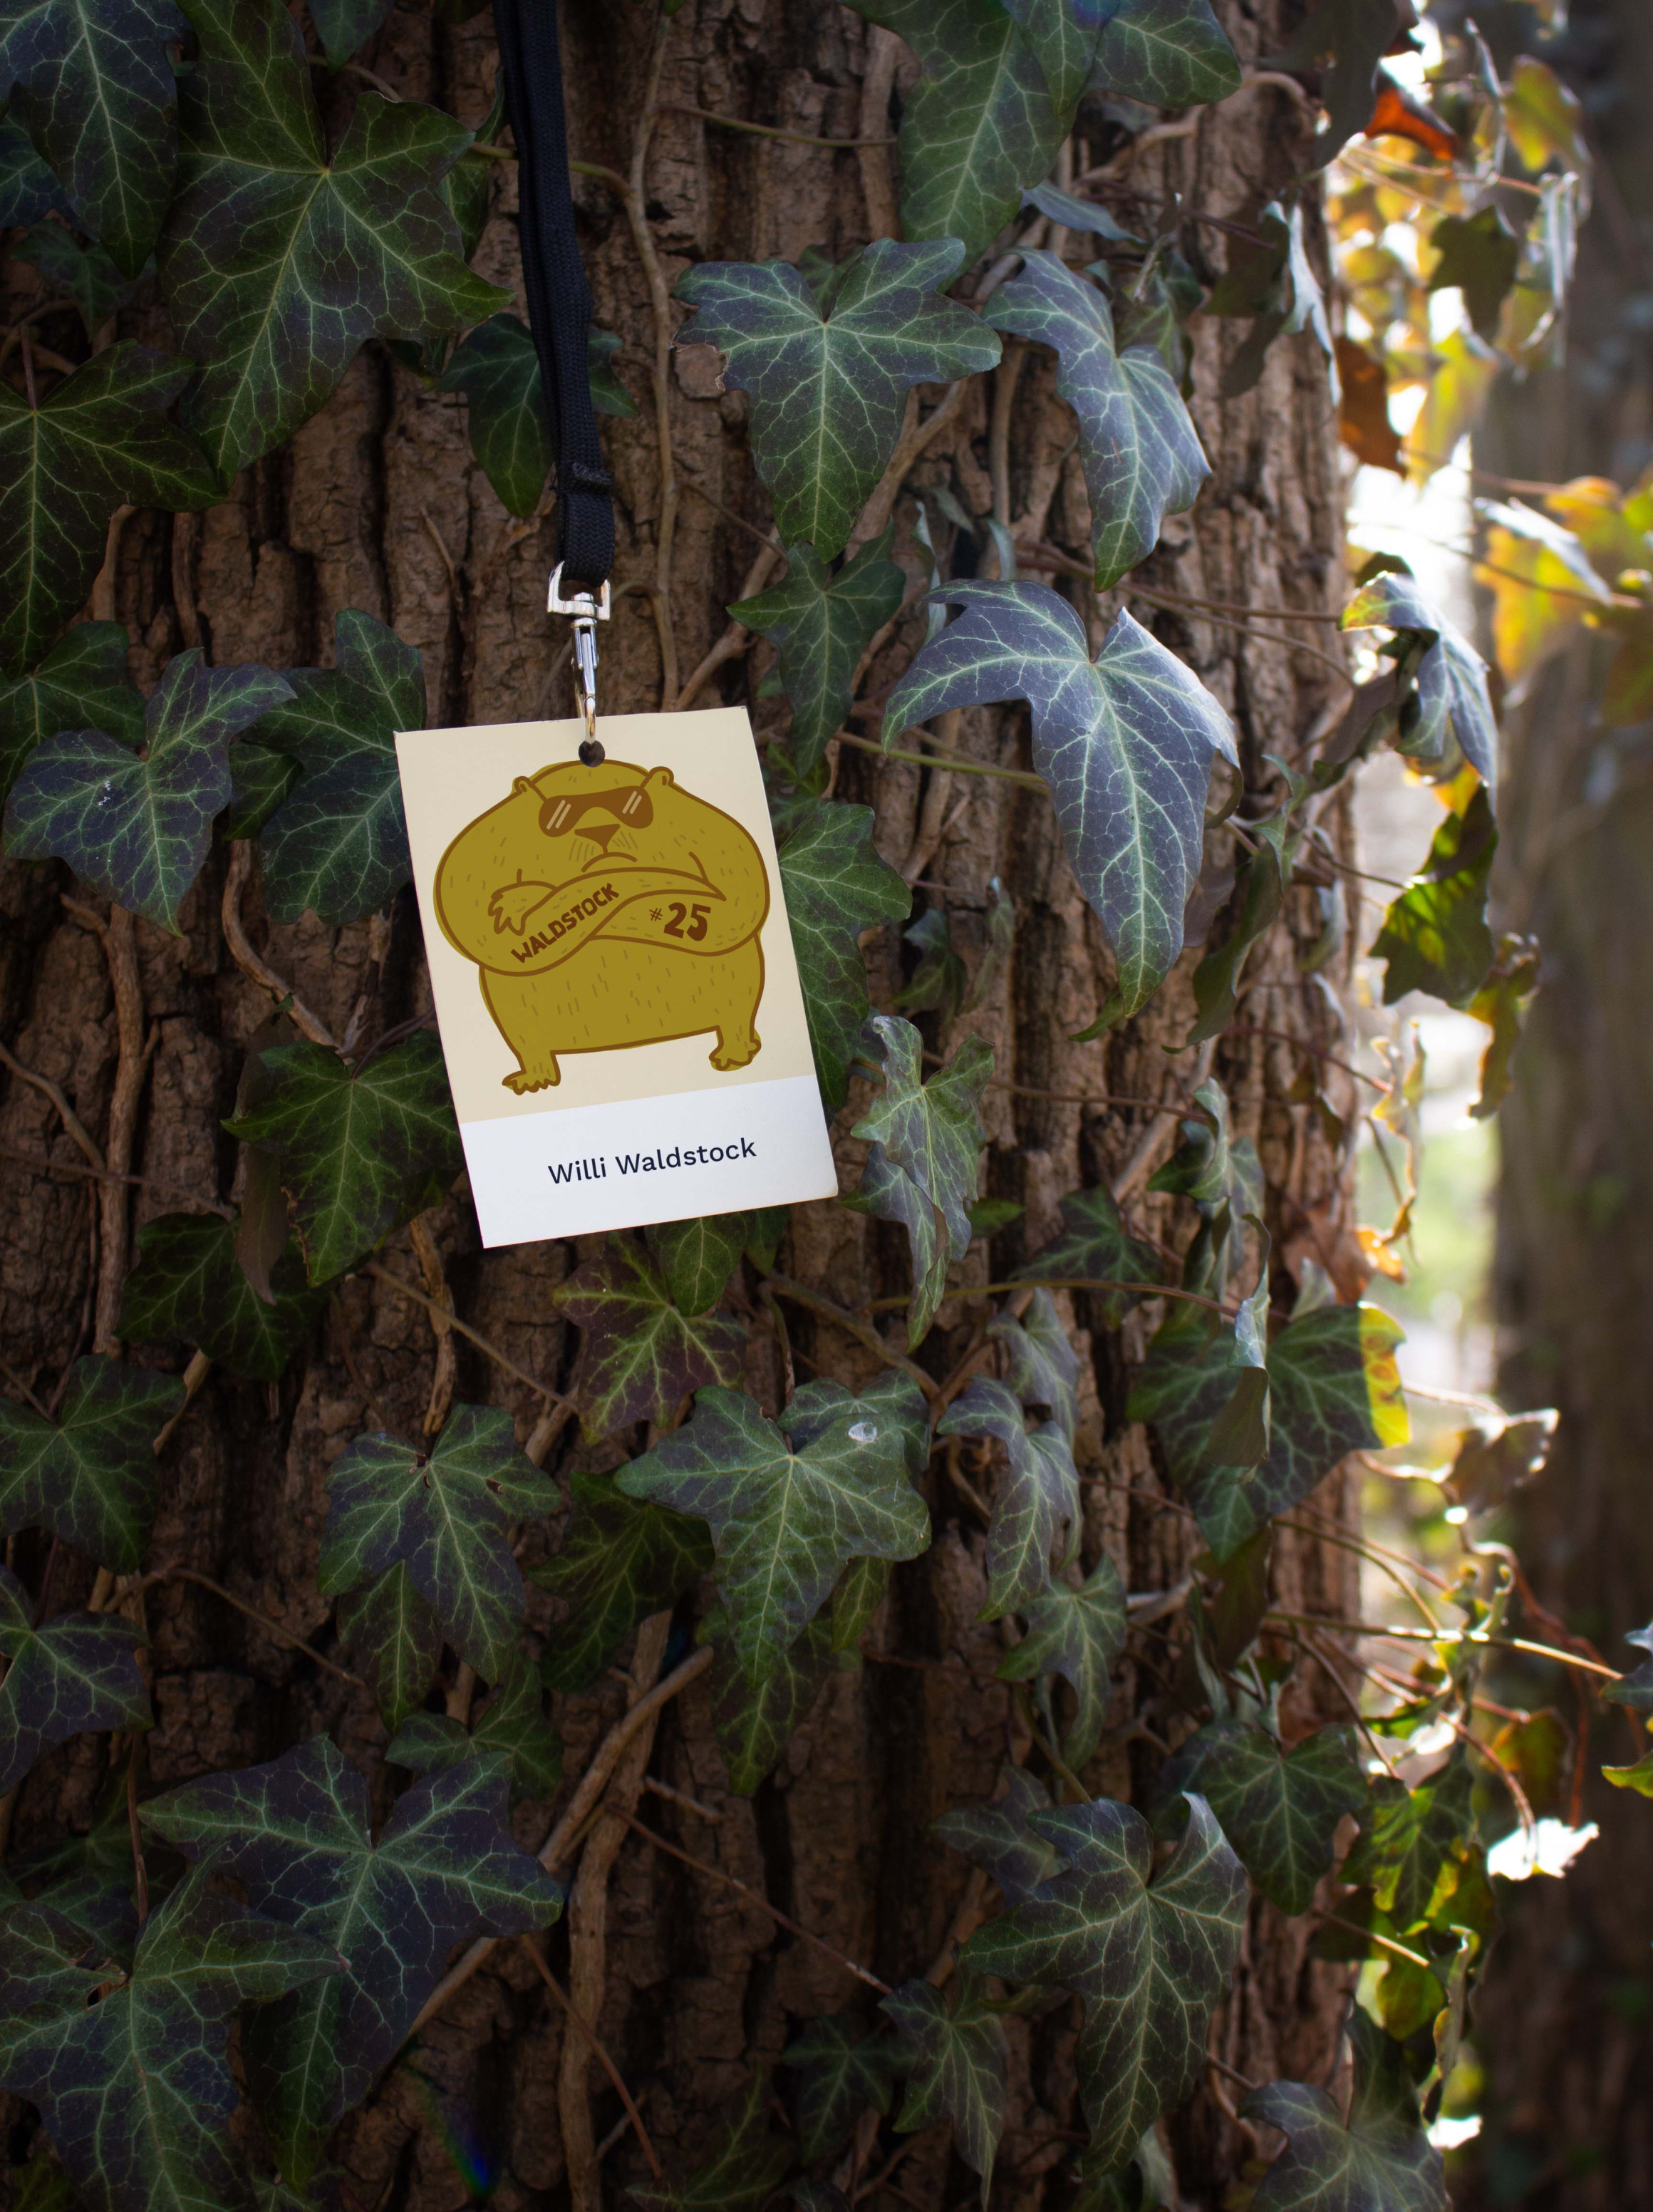 Backstage-Pass hängt an einem Baumstamm, der mit Efeu bewachsen ist. Auf dem Pass ist die Zeichnung eines dicken Bären, der das Waldstock-Logo auf den Unterarm tätowiert hat.